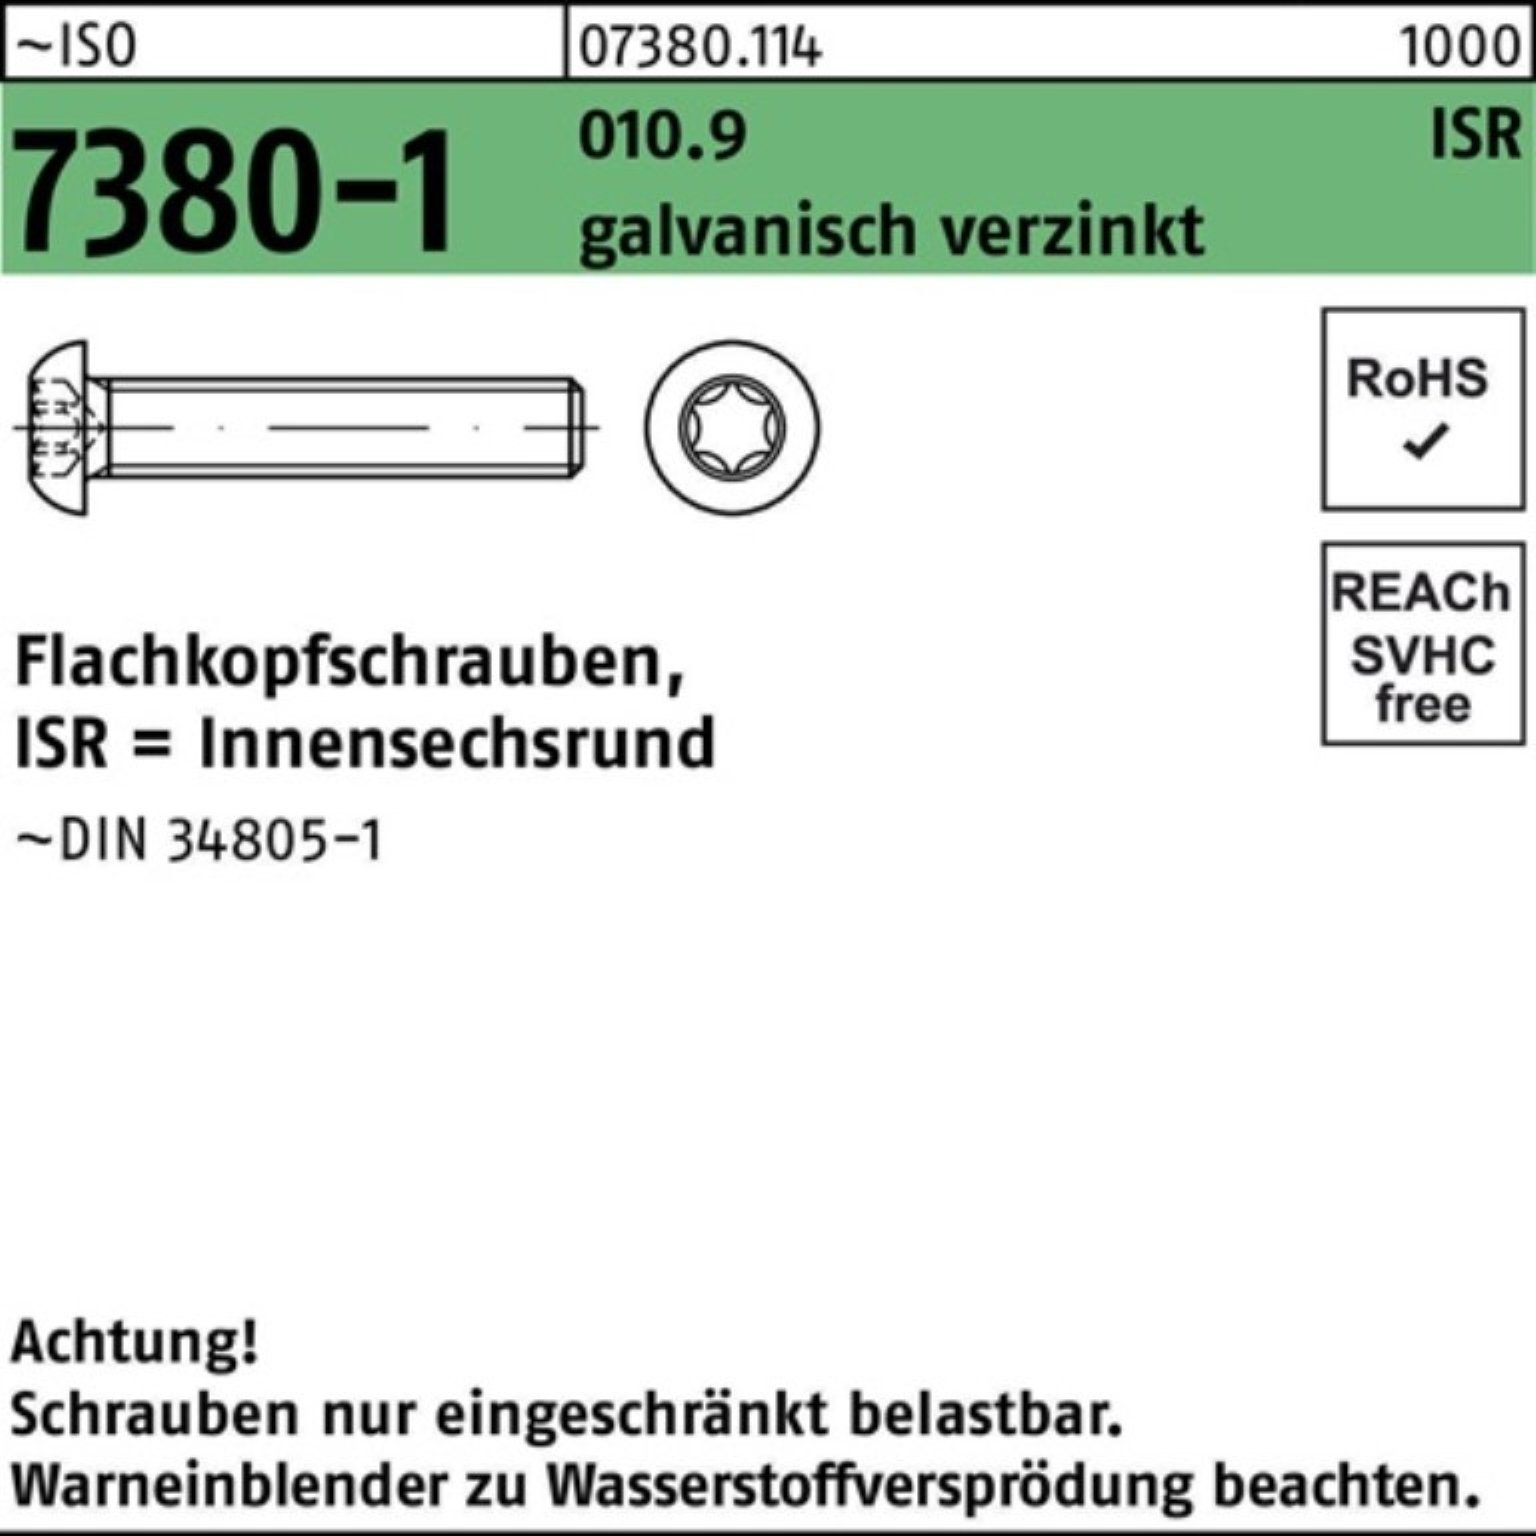 Neue Ankunft Reyher Schraube 500er Pack Flachkopfschraube ISR 7380-1 010.9 galv.verz. M5x16-T25 ISO